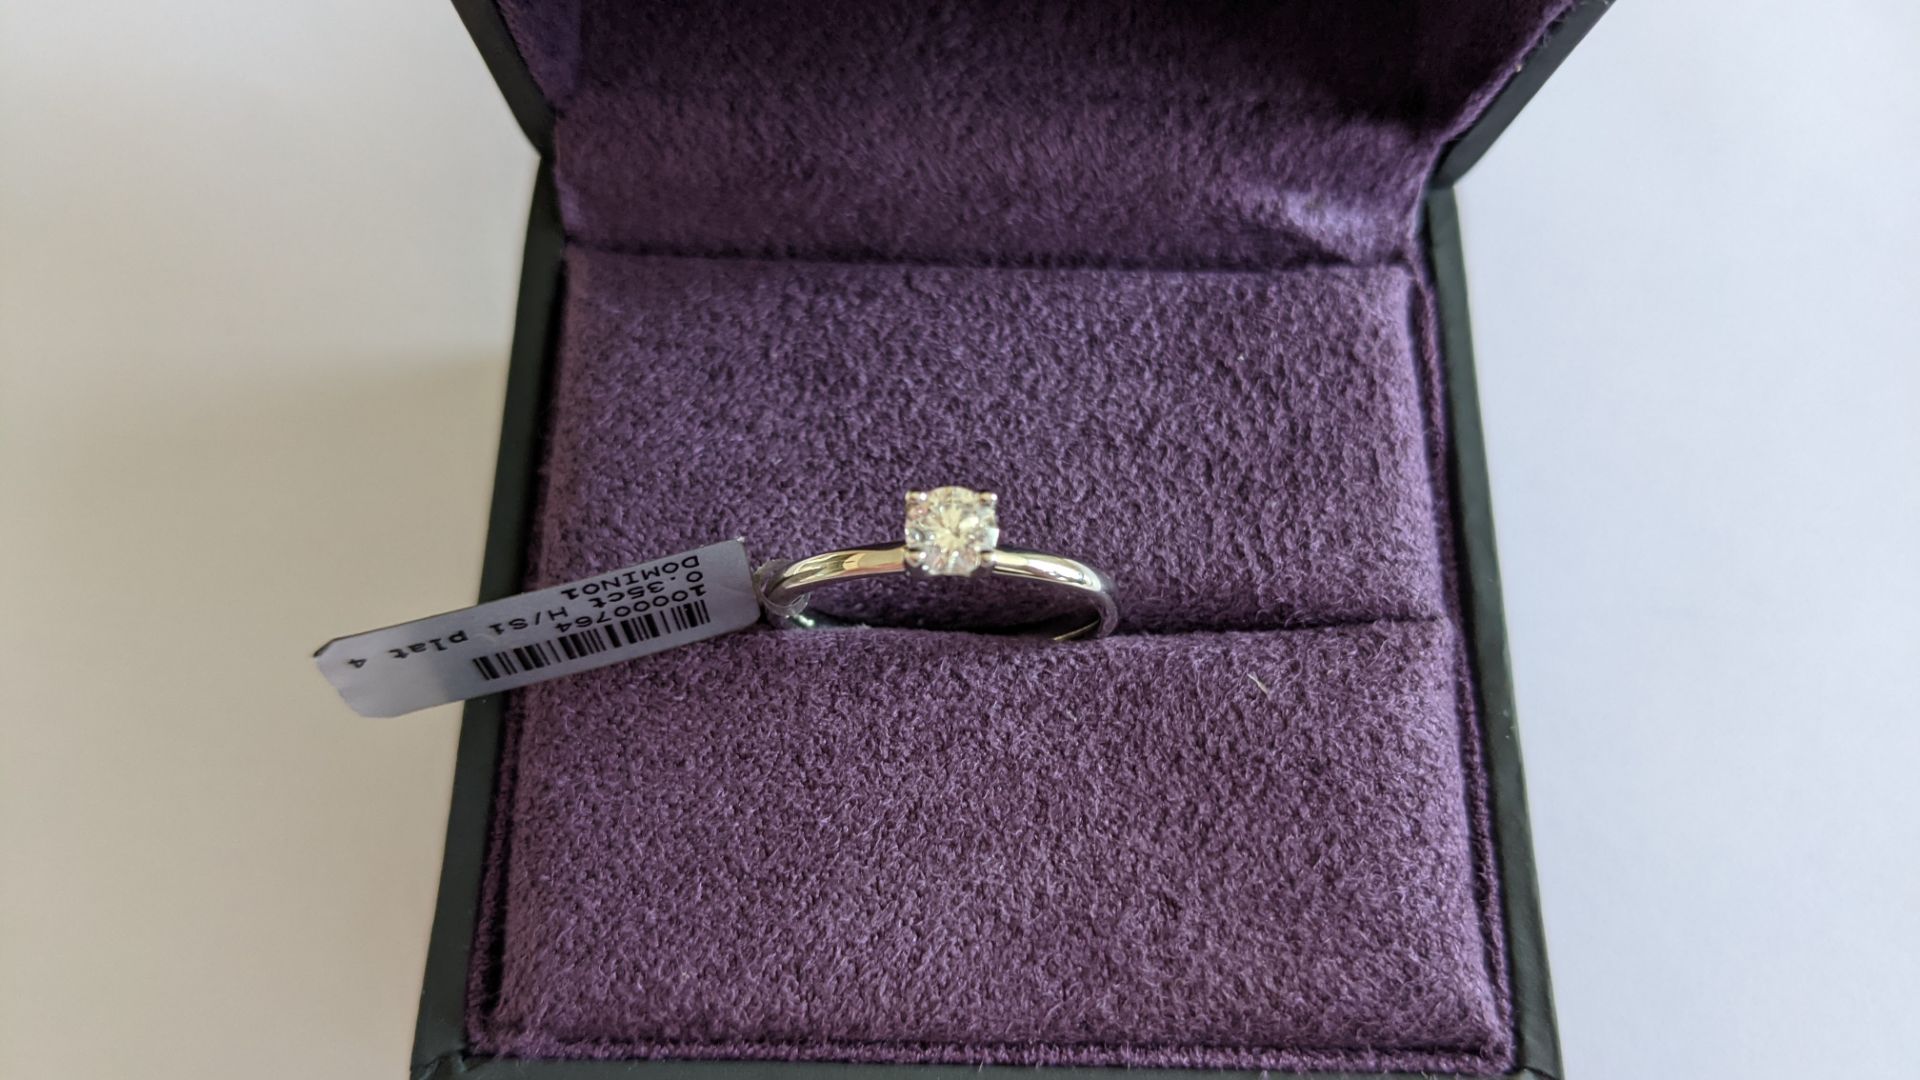 Single stone diamond & platinum 950 ring with 0.35ct H/Si diamond, RRP £1,507 - Image 5 of 29